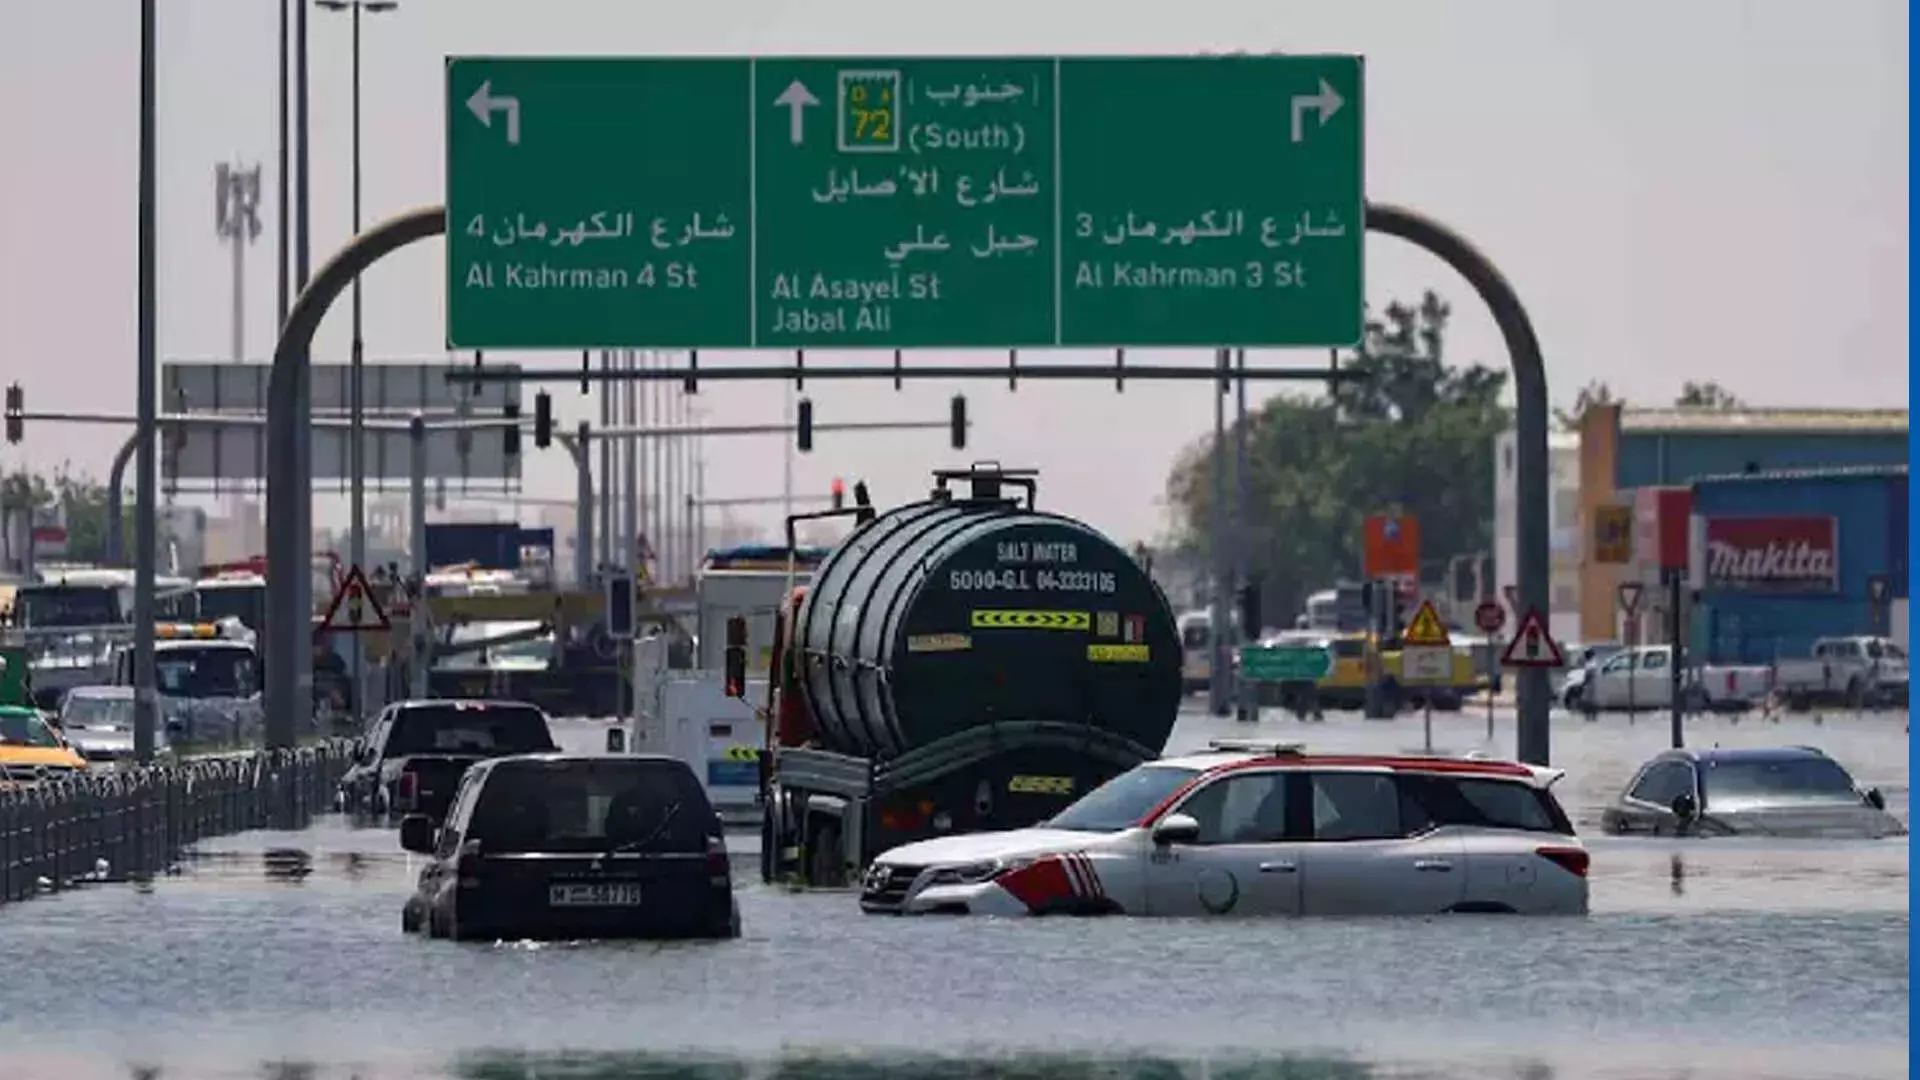 संयुक्त अरब अमीरात में चार की मौत, तूफान के बाद दुबई हवाईअड्डा अब भी बाधित